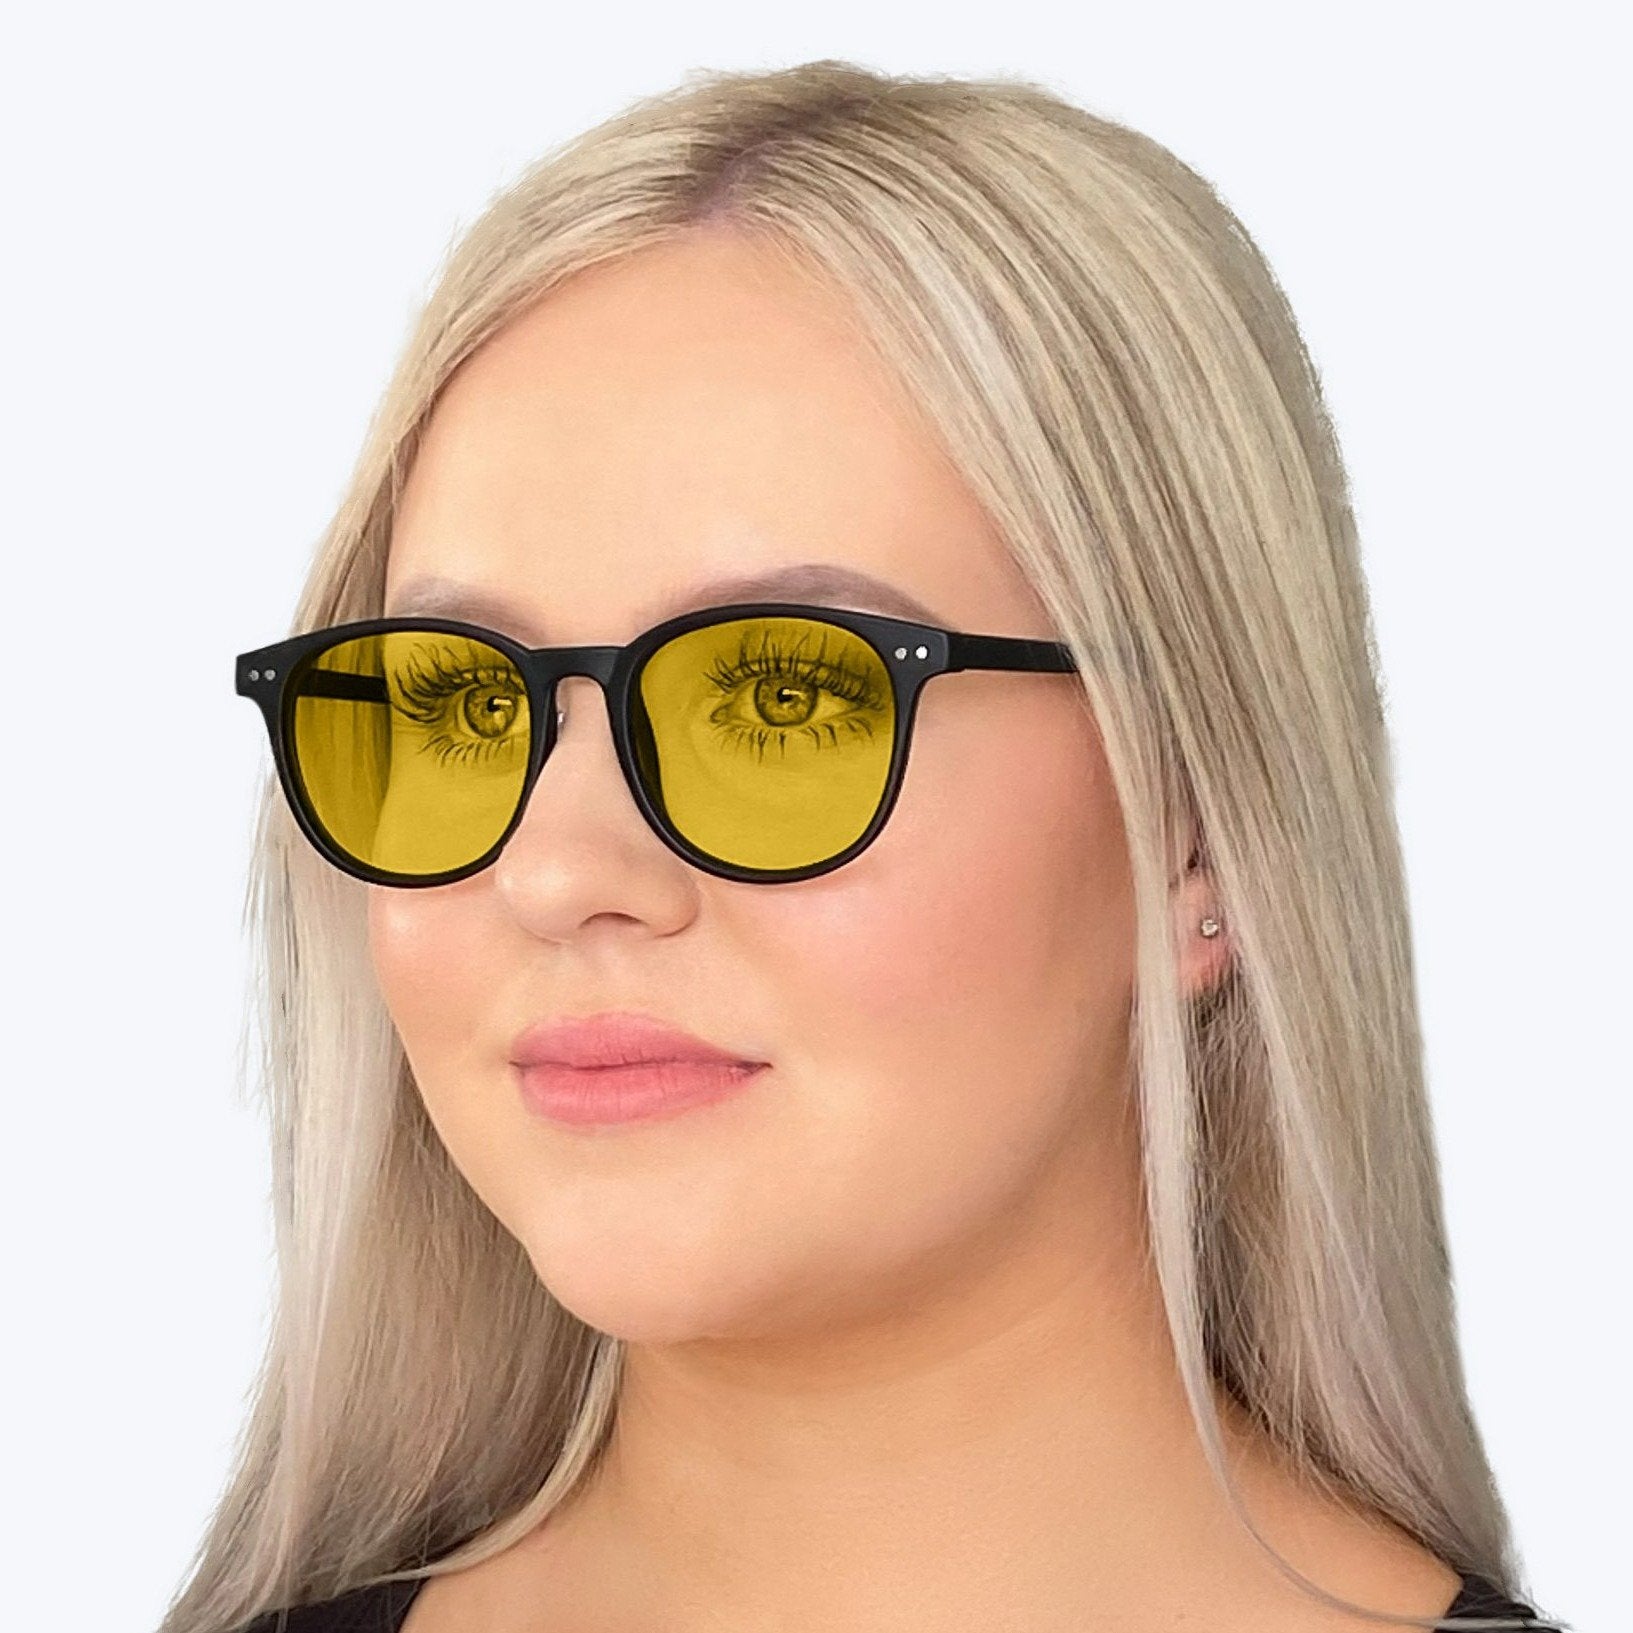 DayMax Billie Glasses - Black Blue Light Filter Glasses - Yellow Lens BlockBlueLight 